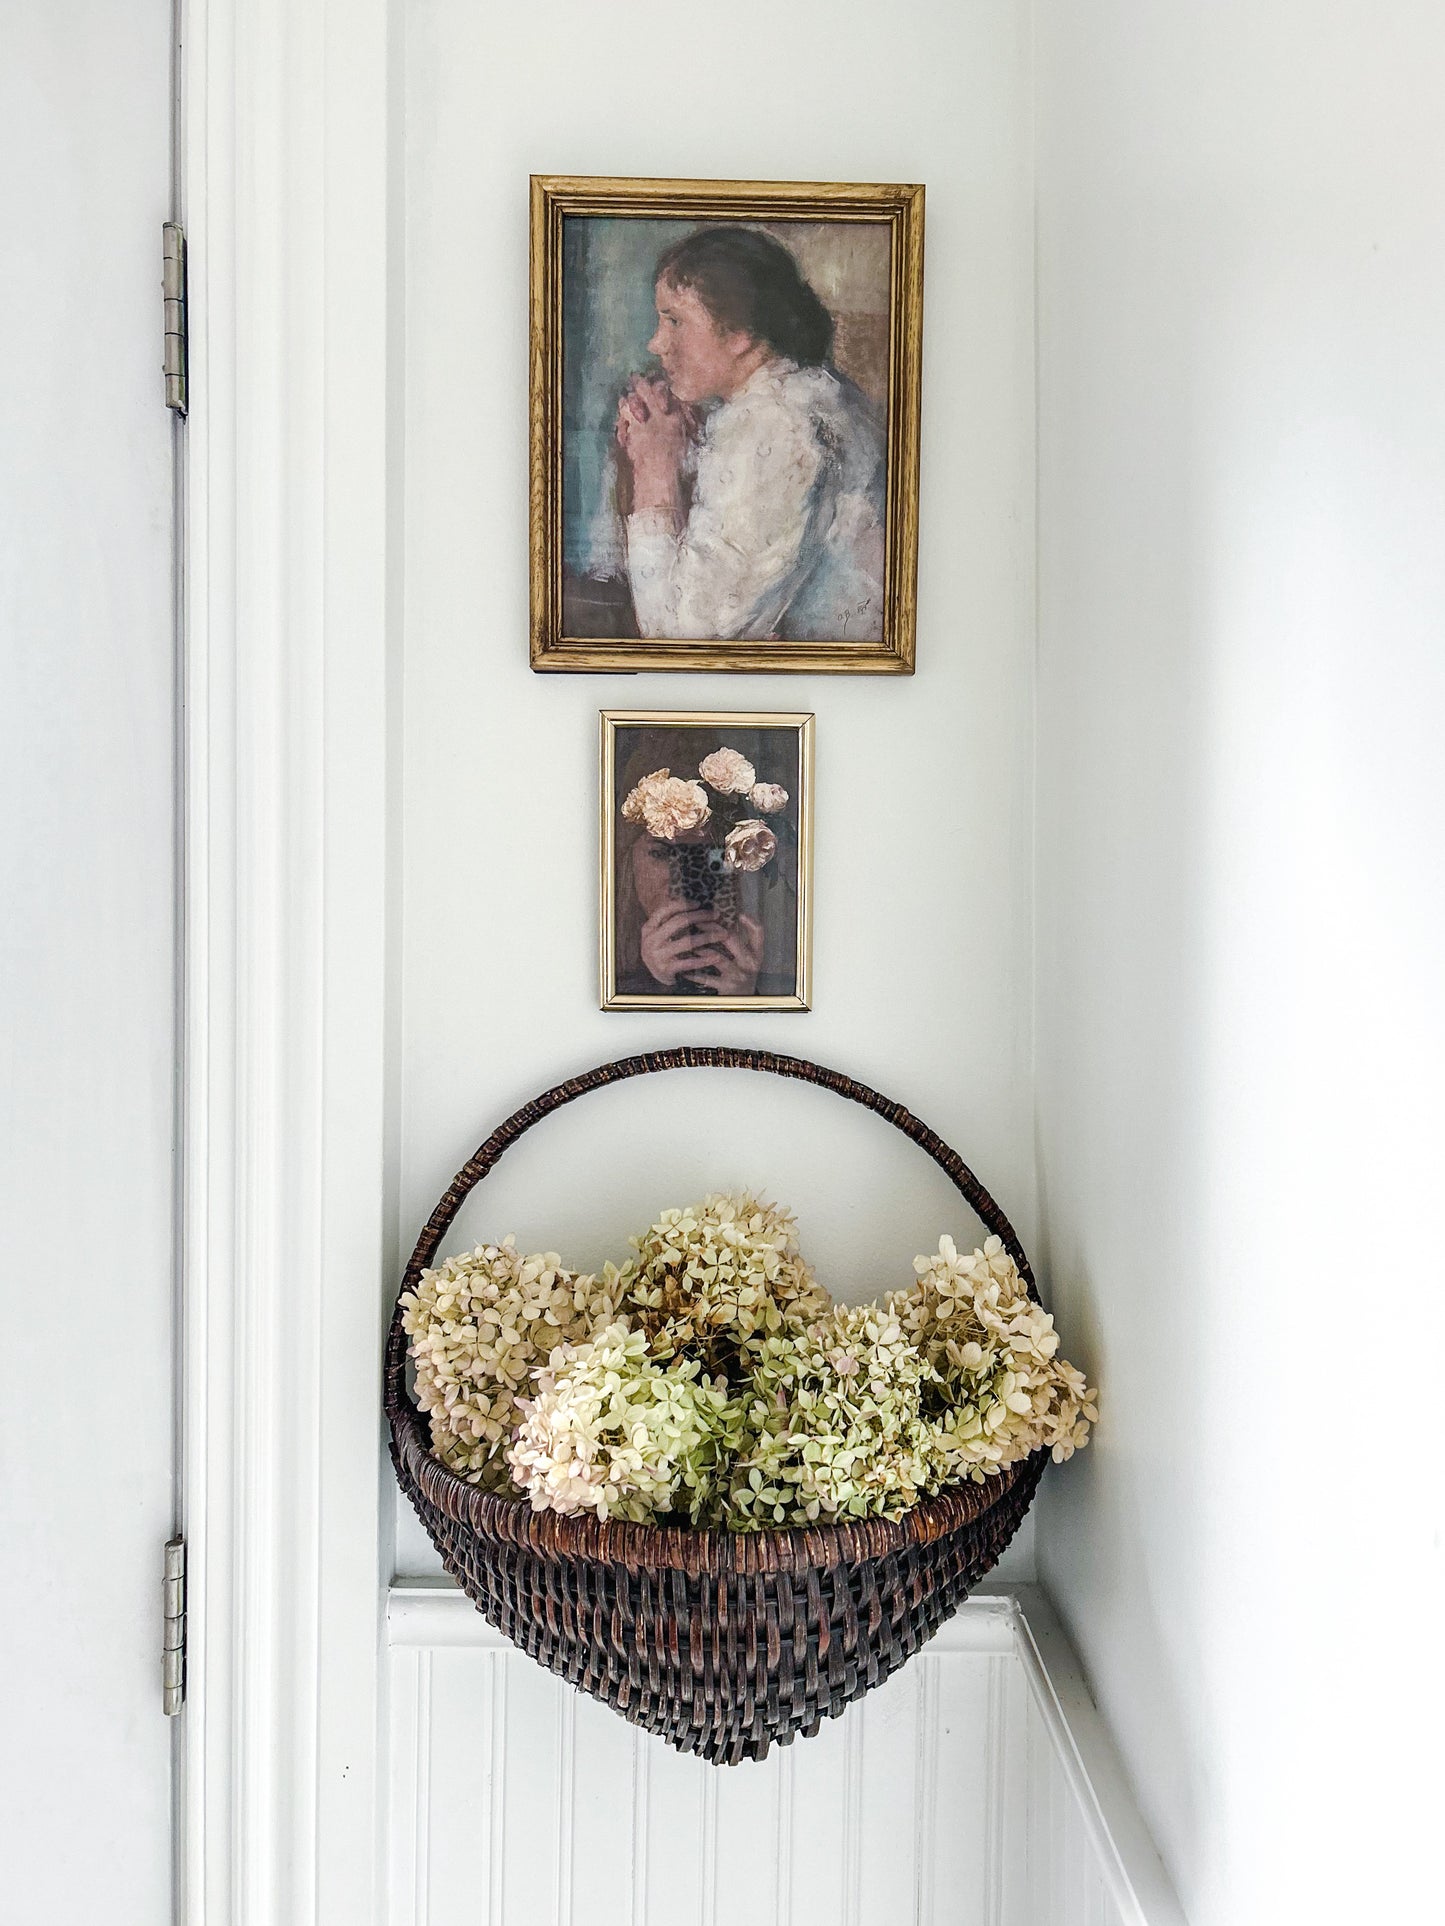 vintage framed floral print